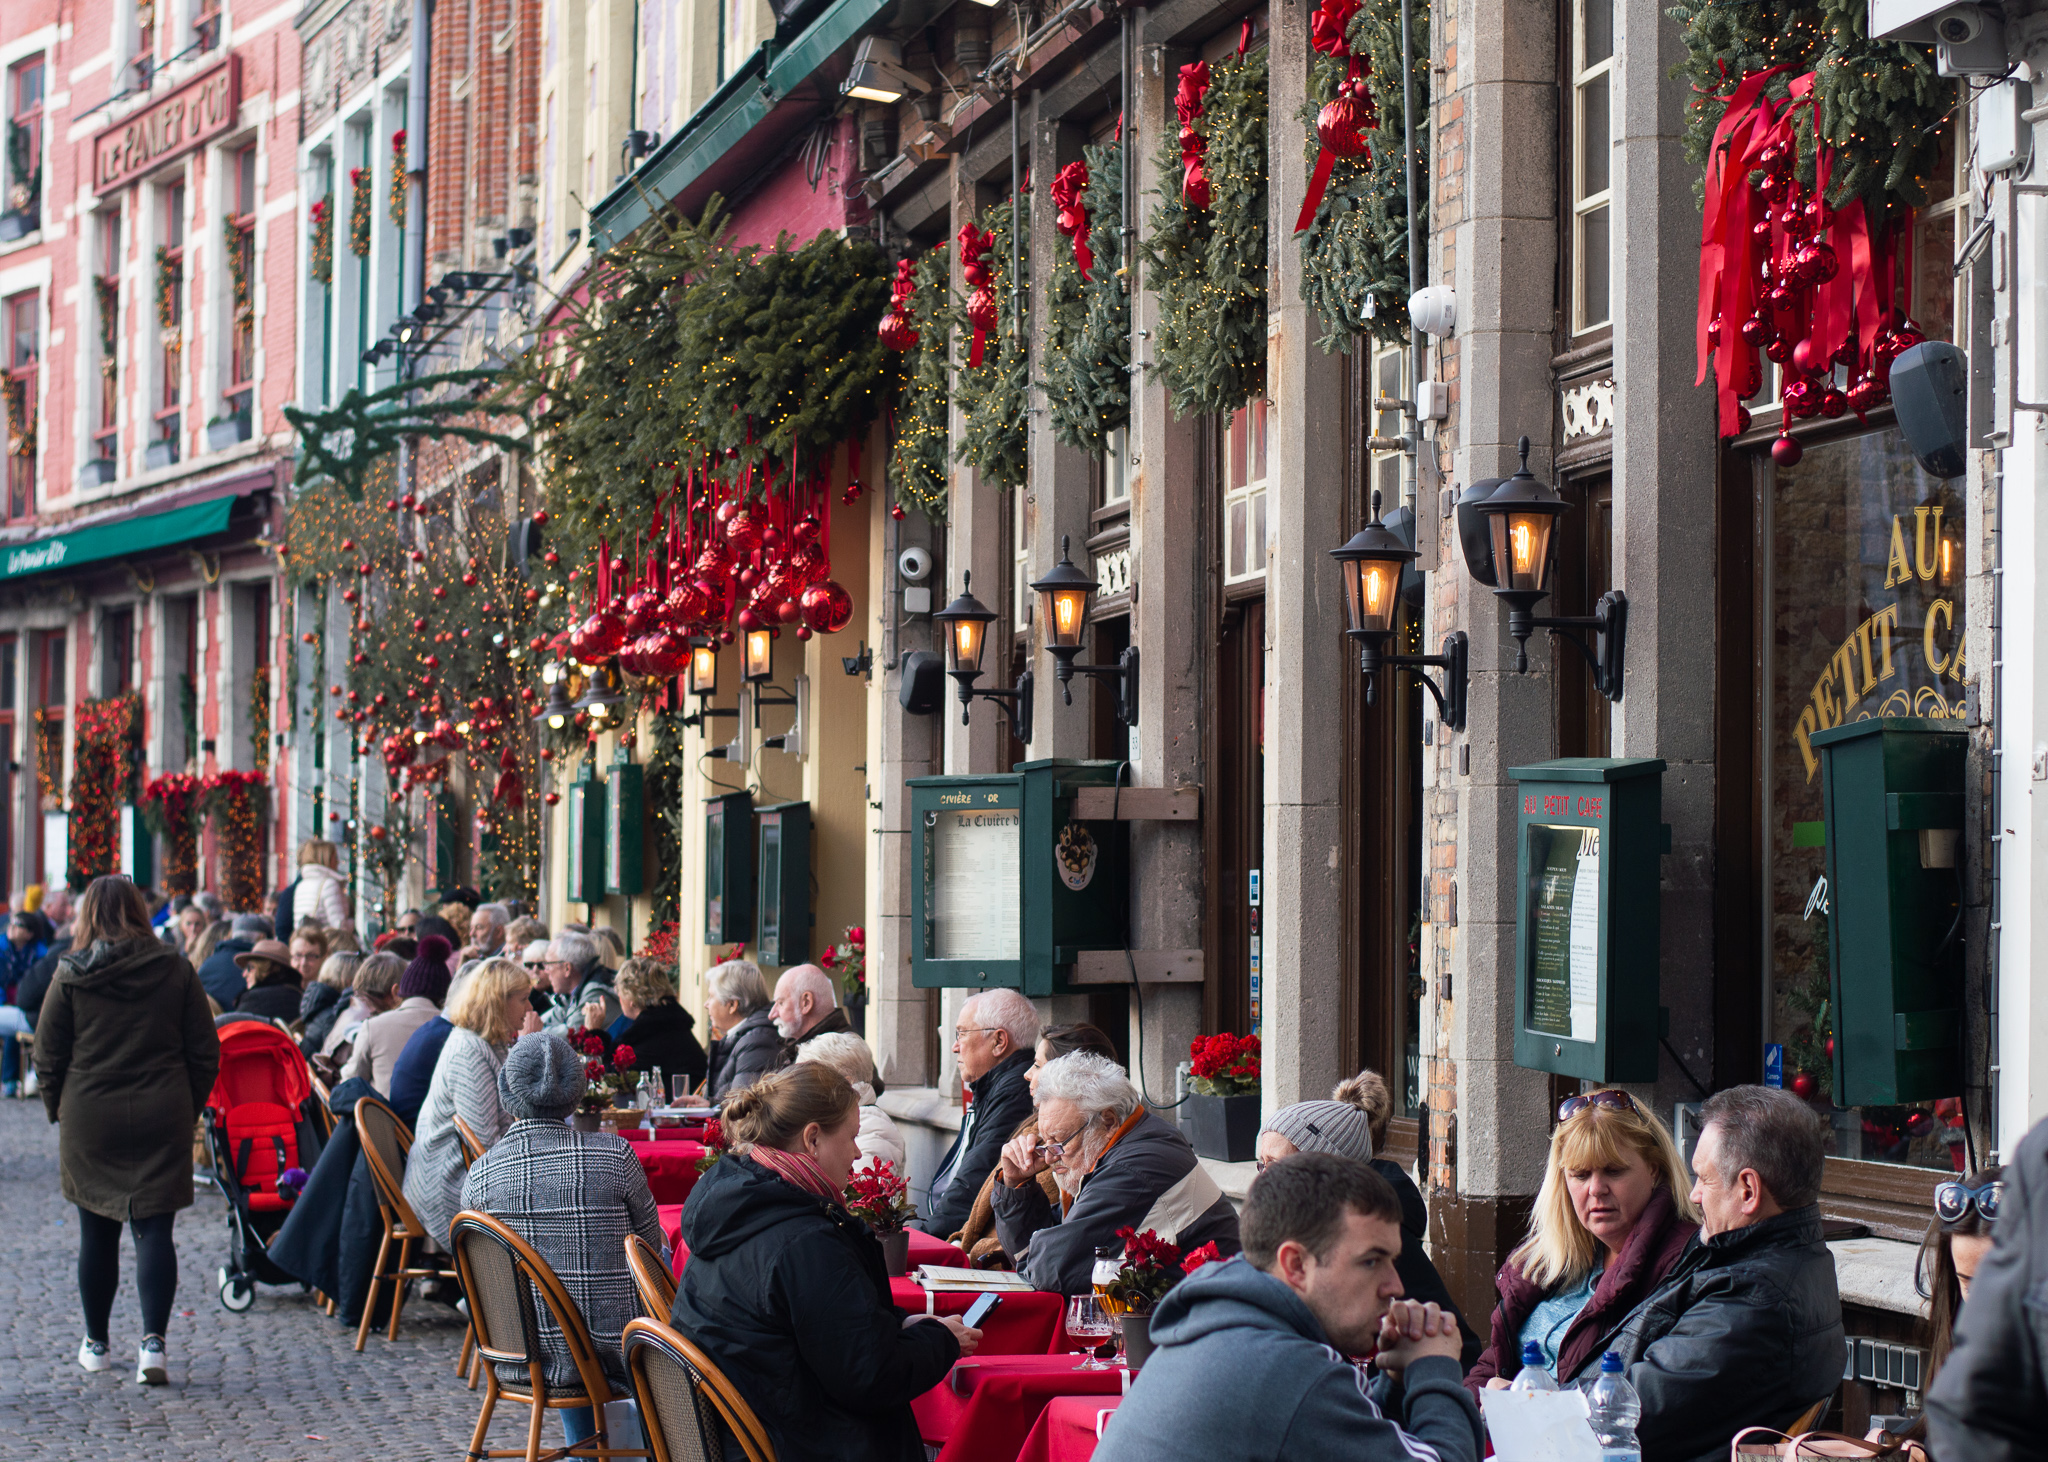 Visitors dining at Markt in Bruges, Belgium